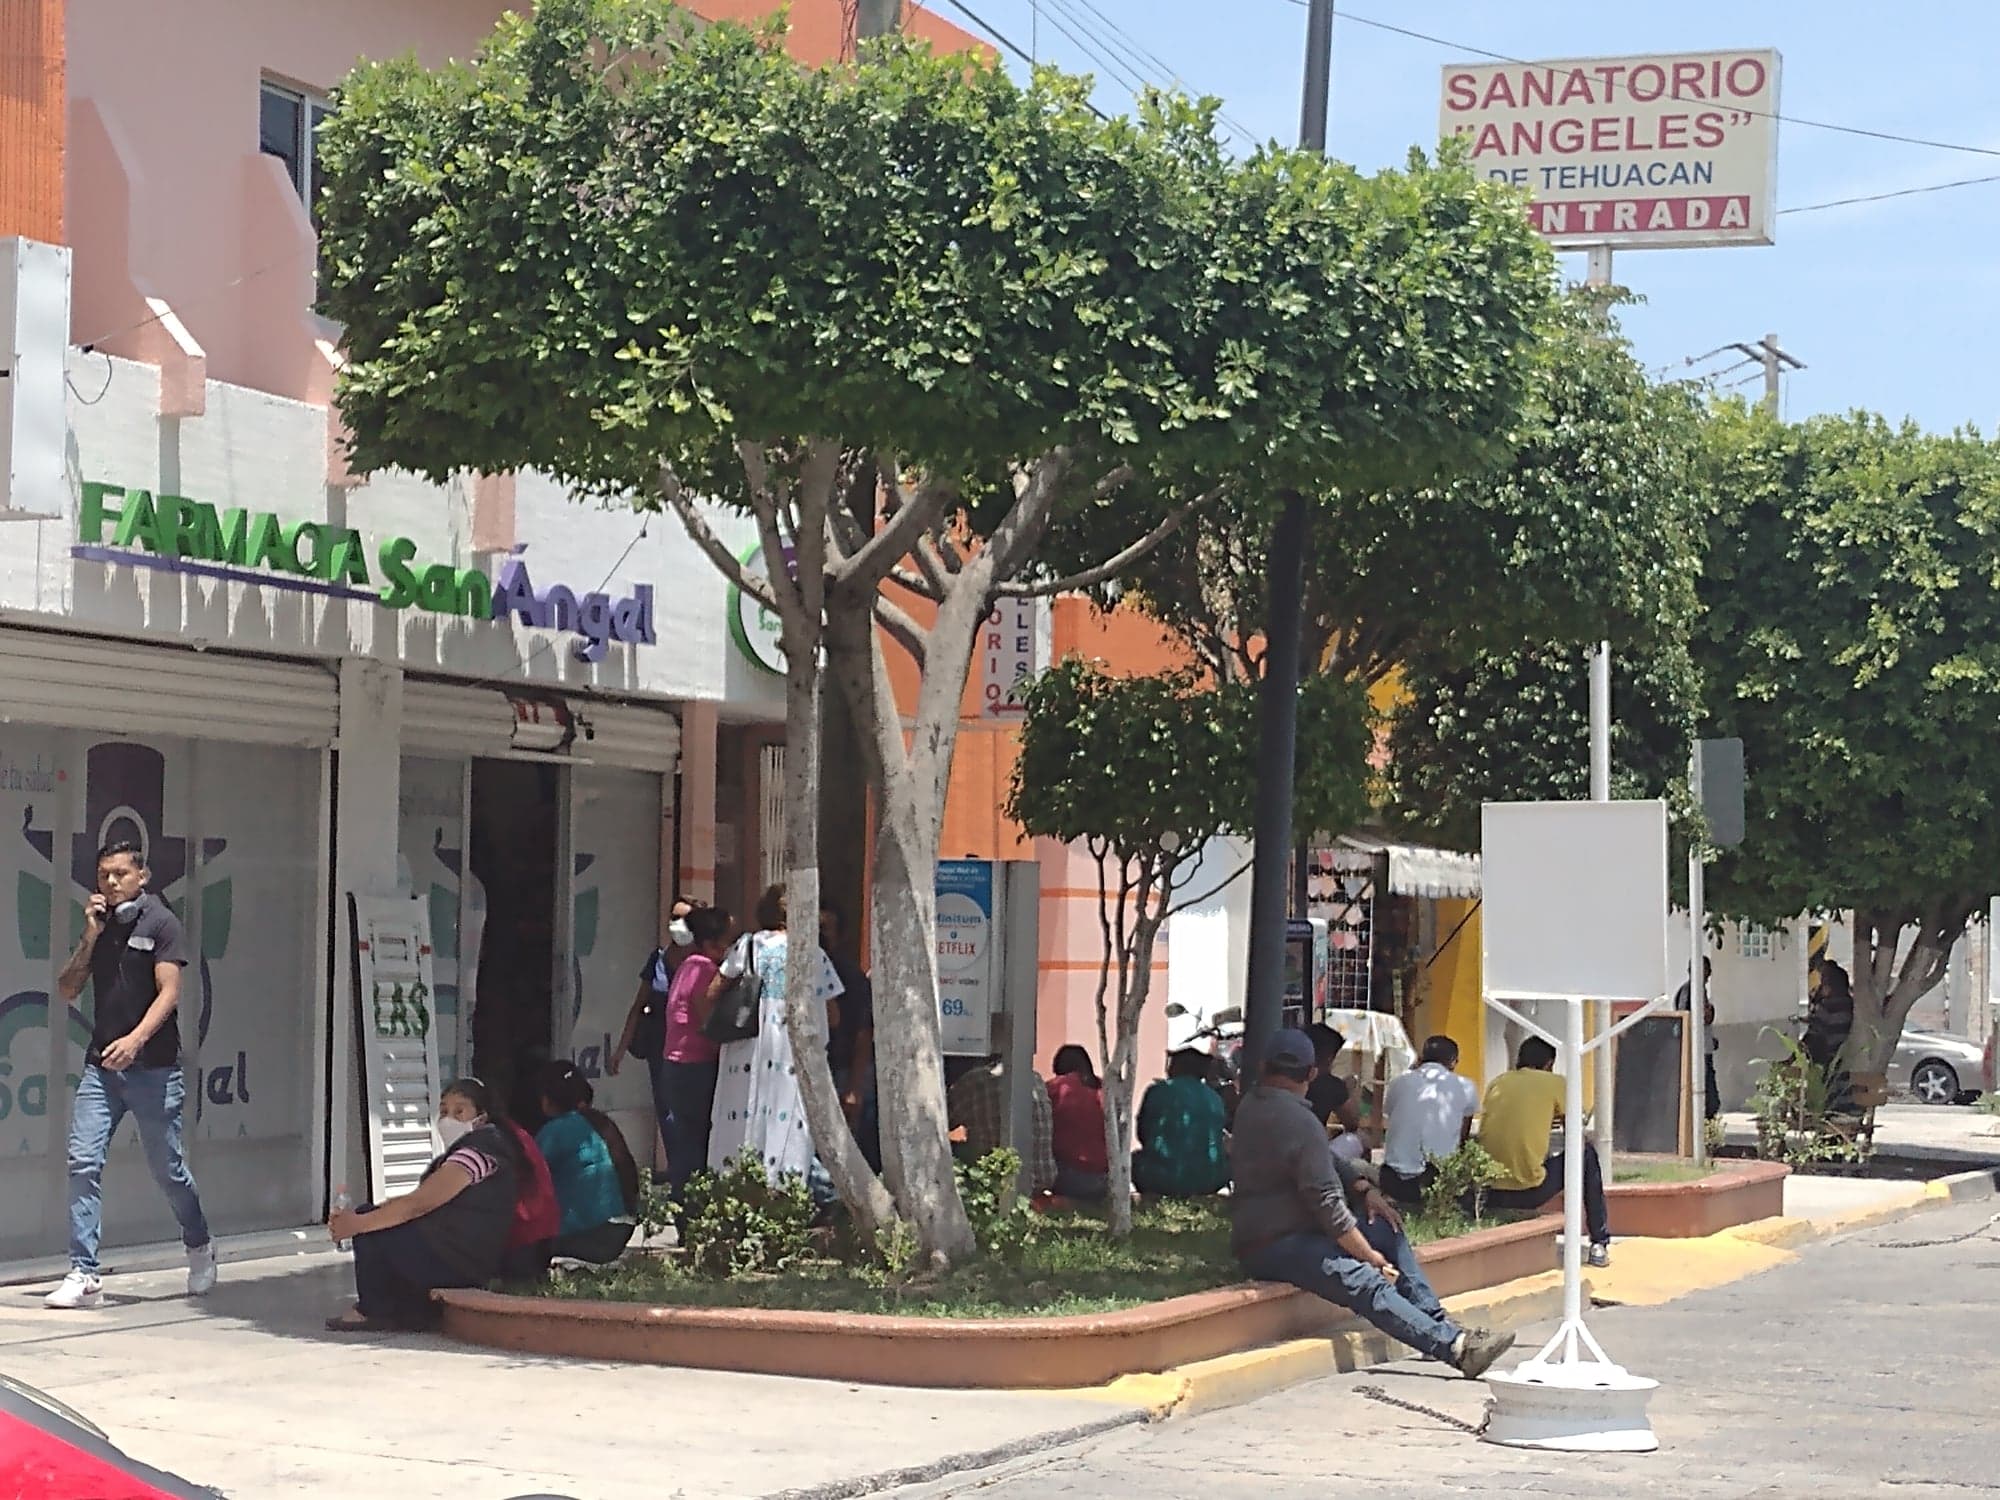 Clausuran Sanatorio Ángeles por falta de permisos en Tehuacán